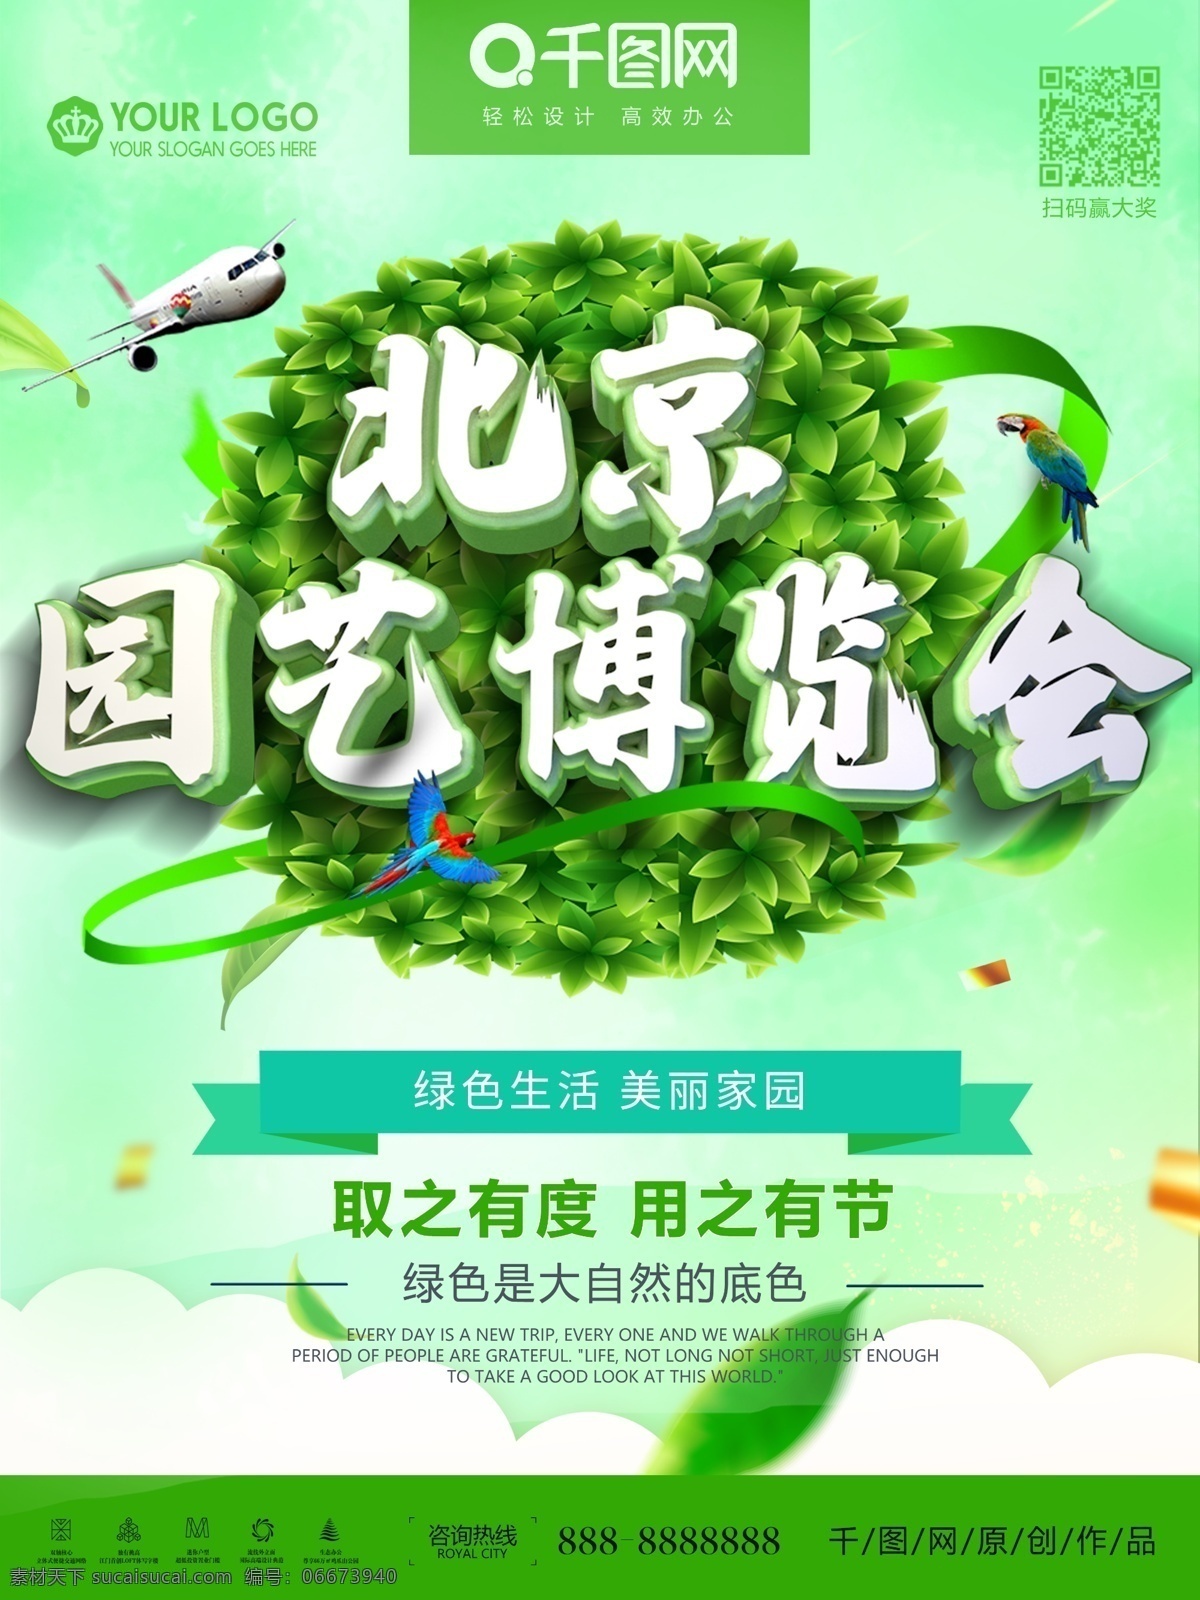 创意 北京 园艺 博览会 公益 海报 绿色生活 创造美好家园 扁平化海报 环保海报 扁平化 一家人 树木 房子 山 美好家园 绿色出行 环保